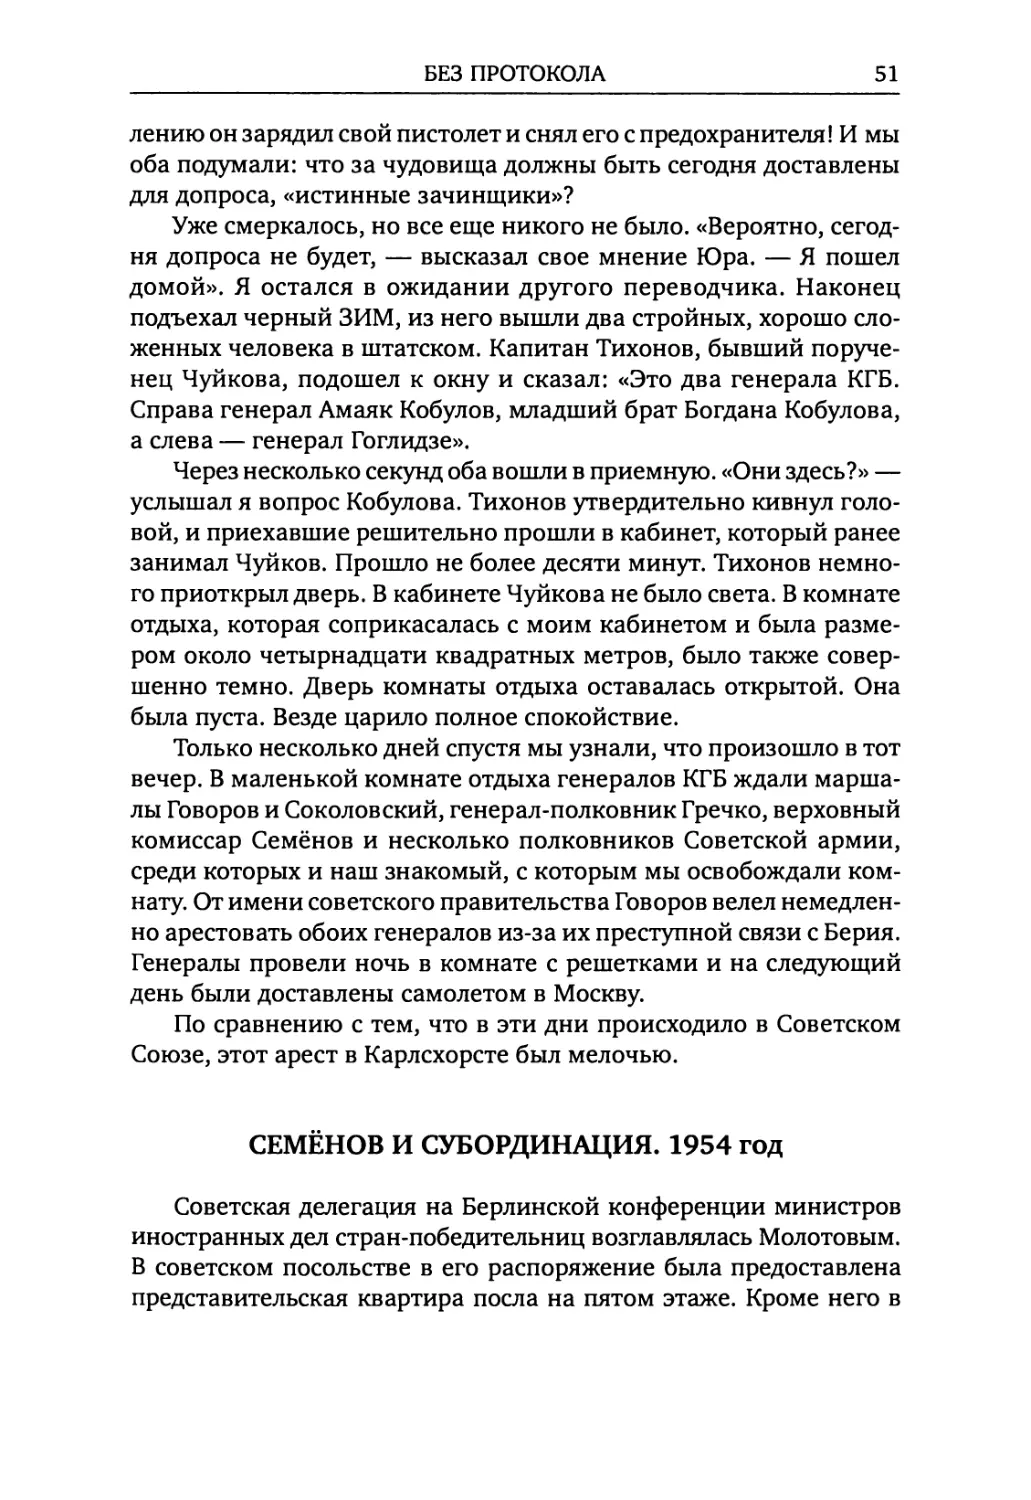 Семёнов и субординация. 1954 год